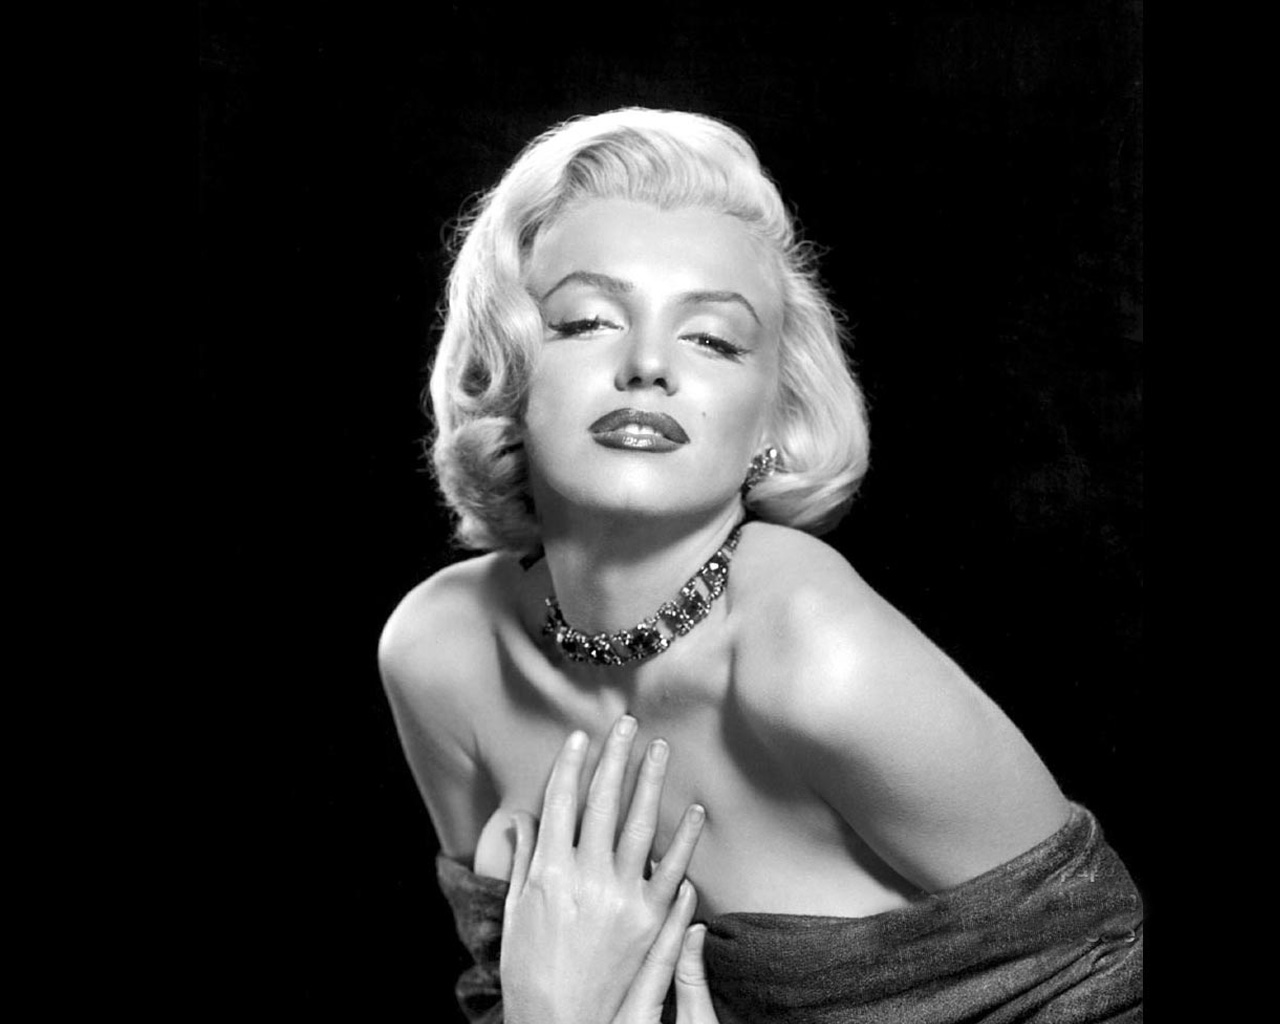 http://2.bp.blogspot.com/-_hvK7lCrqxM/T0d4Wv9IAXI/AAAAAAAABv0/c4qeAfsWpDs/s1600/Marilyn-Monroe-002.jpg